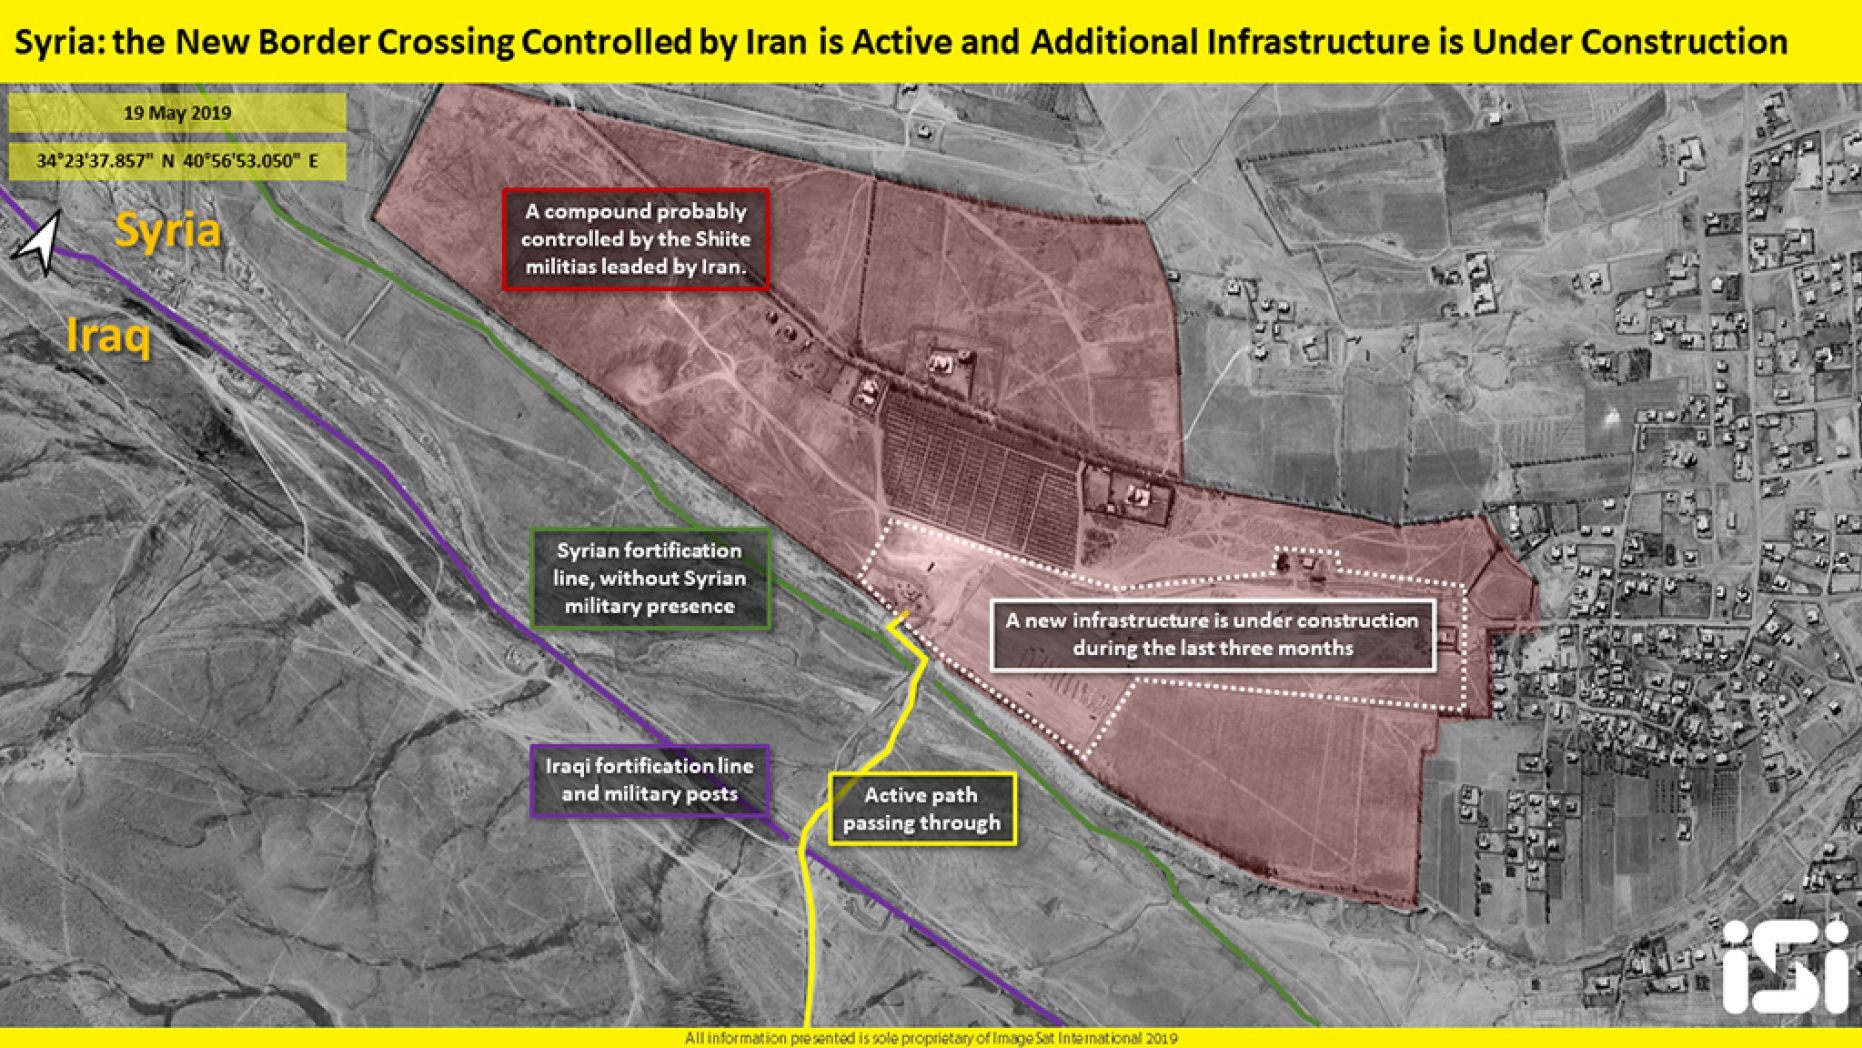 موقع امريكي يعرض صورا لمعبر إيراني على حدود العراق وسوريا لتهريب النفط والسلاح